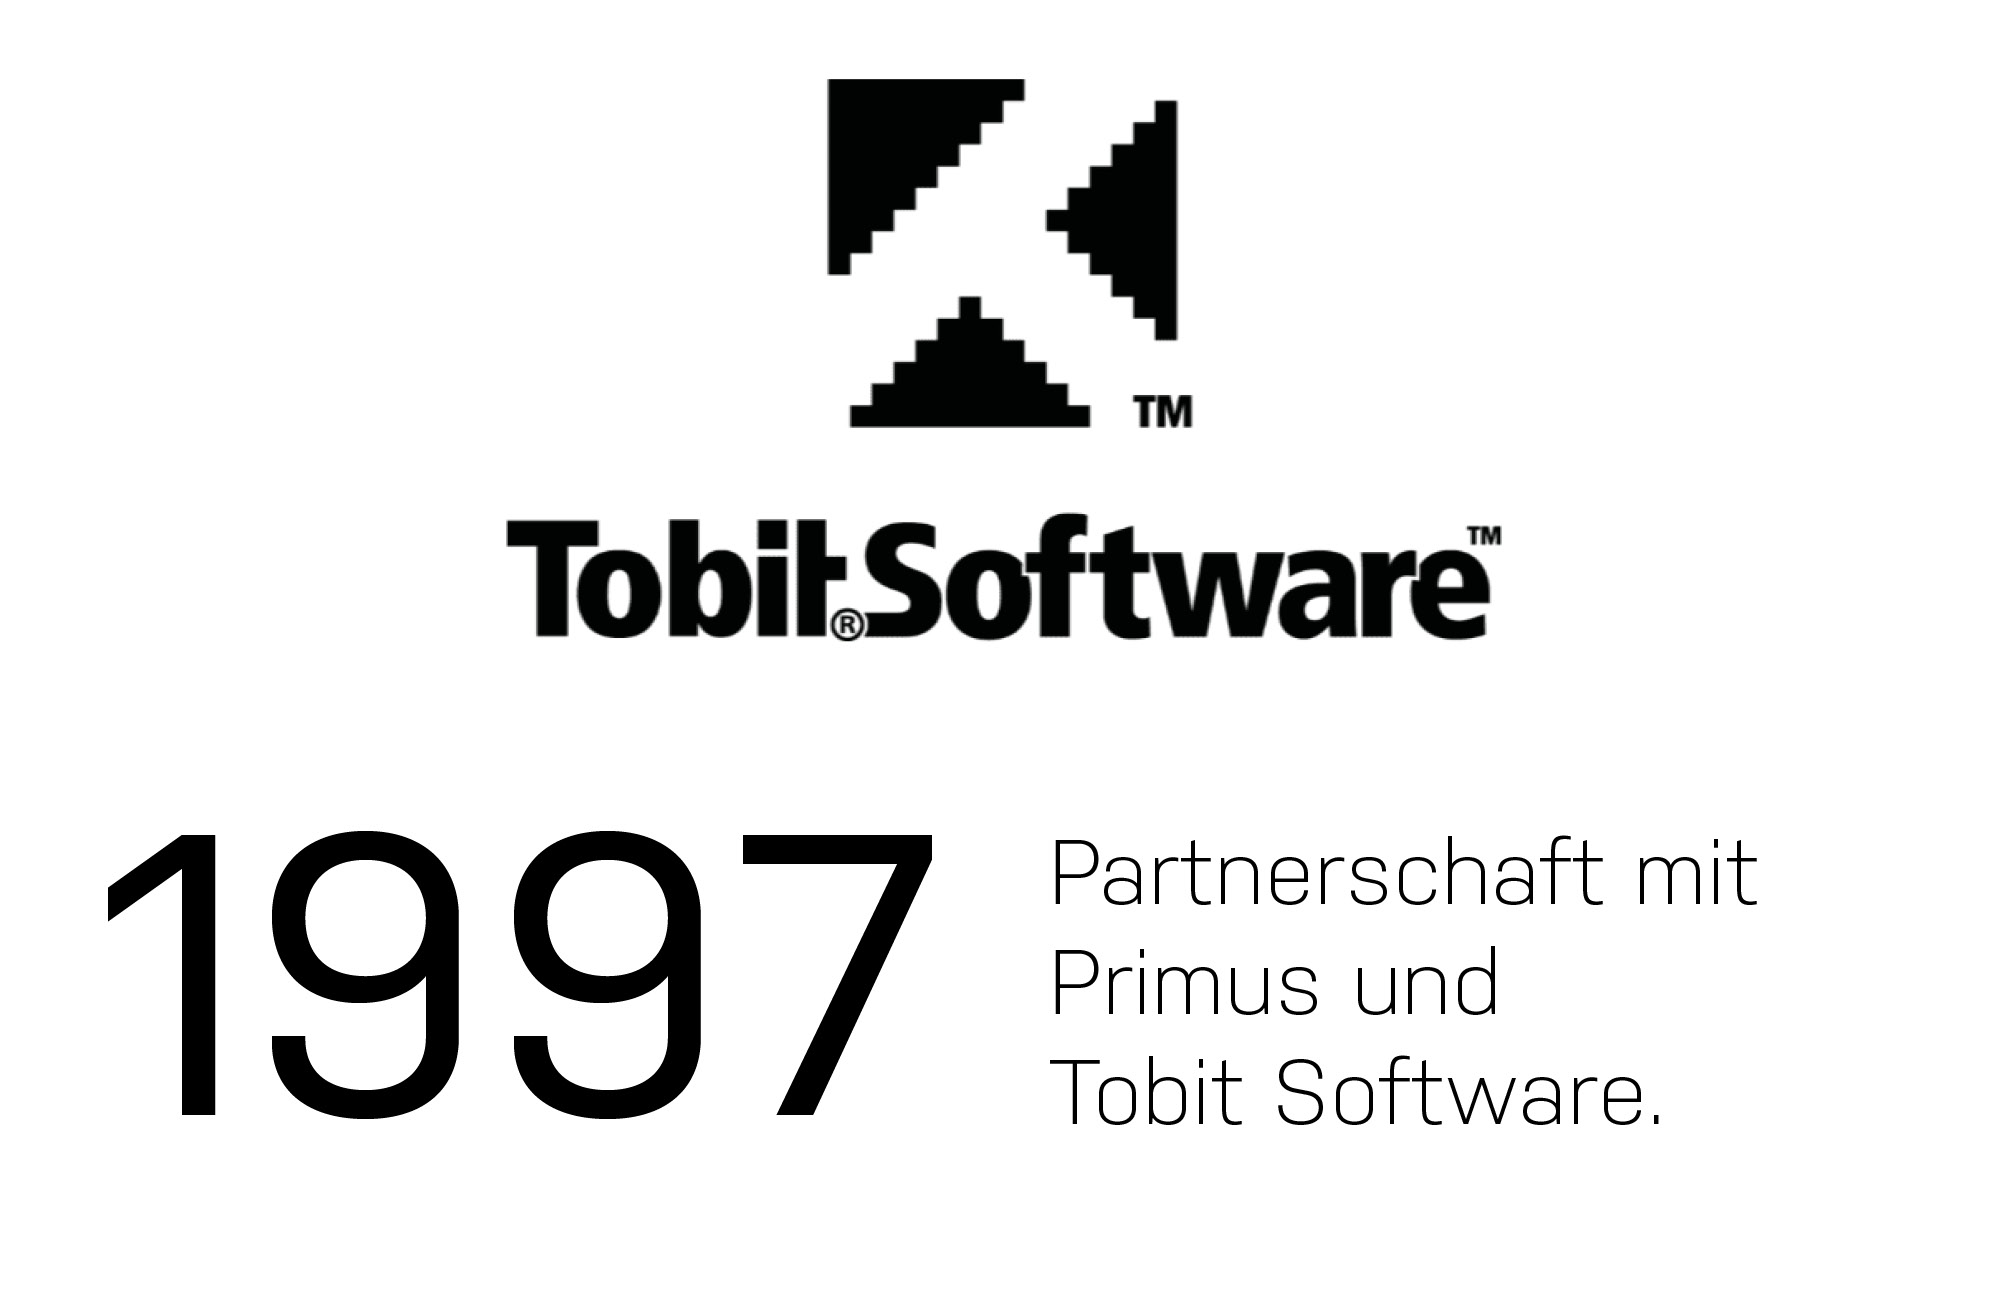 1997 Tobit